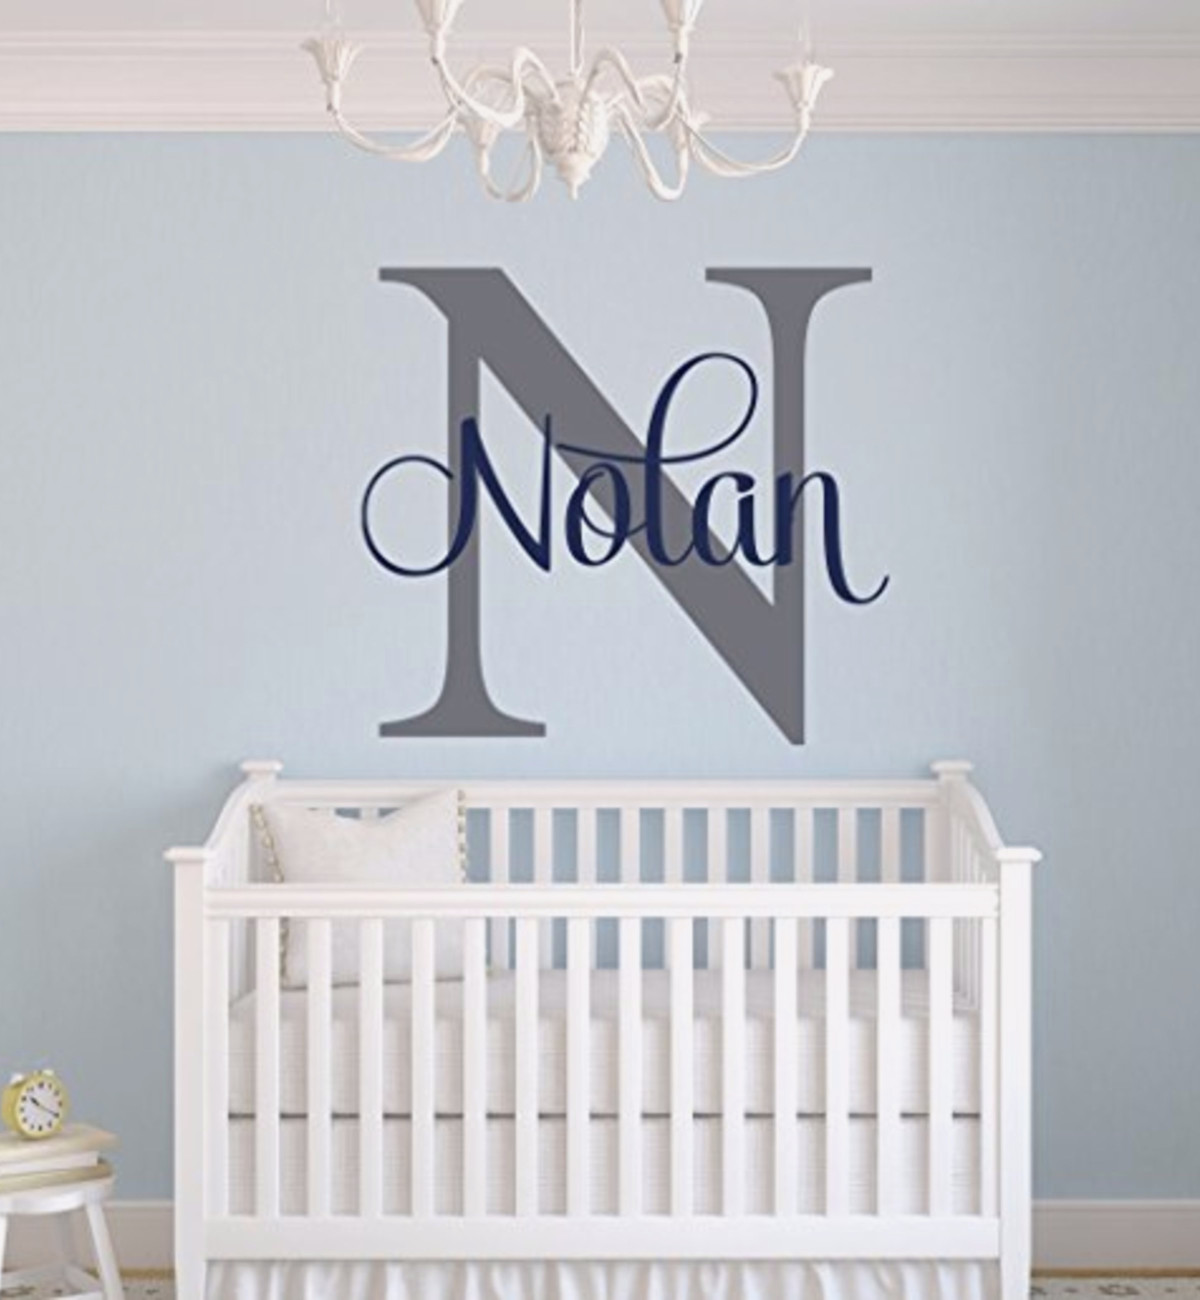 Unique baby boy nursery wall decor idea - baby boy nurseries and decorating ideas